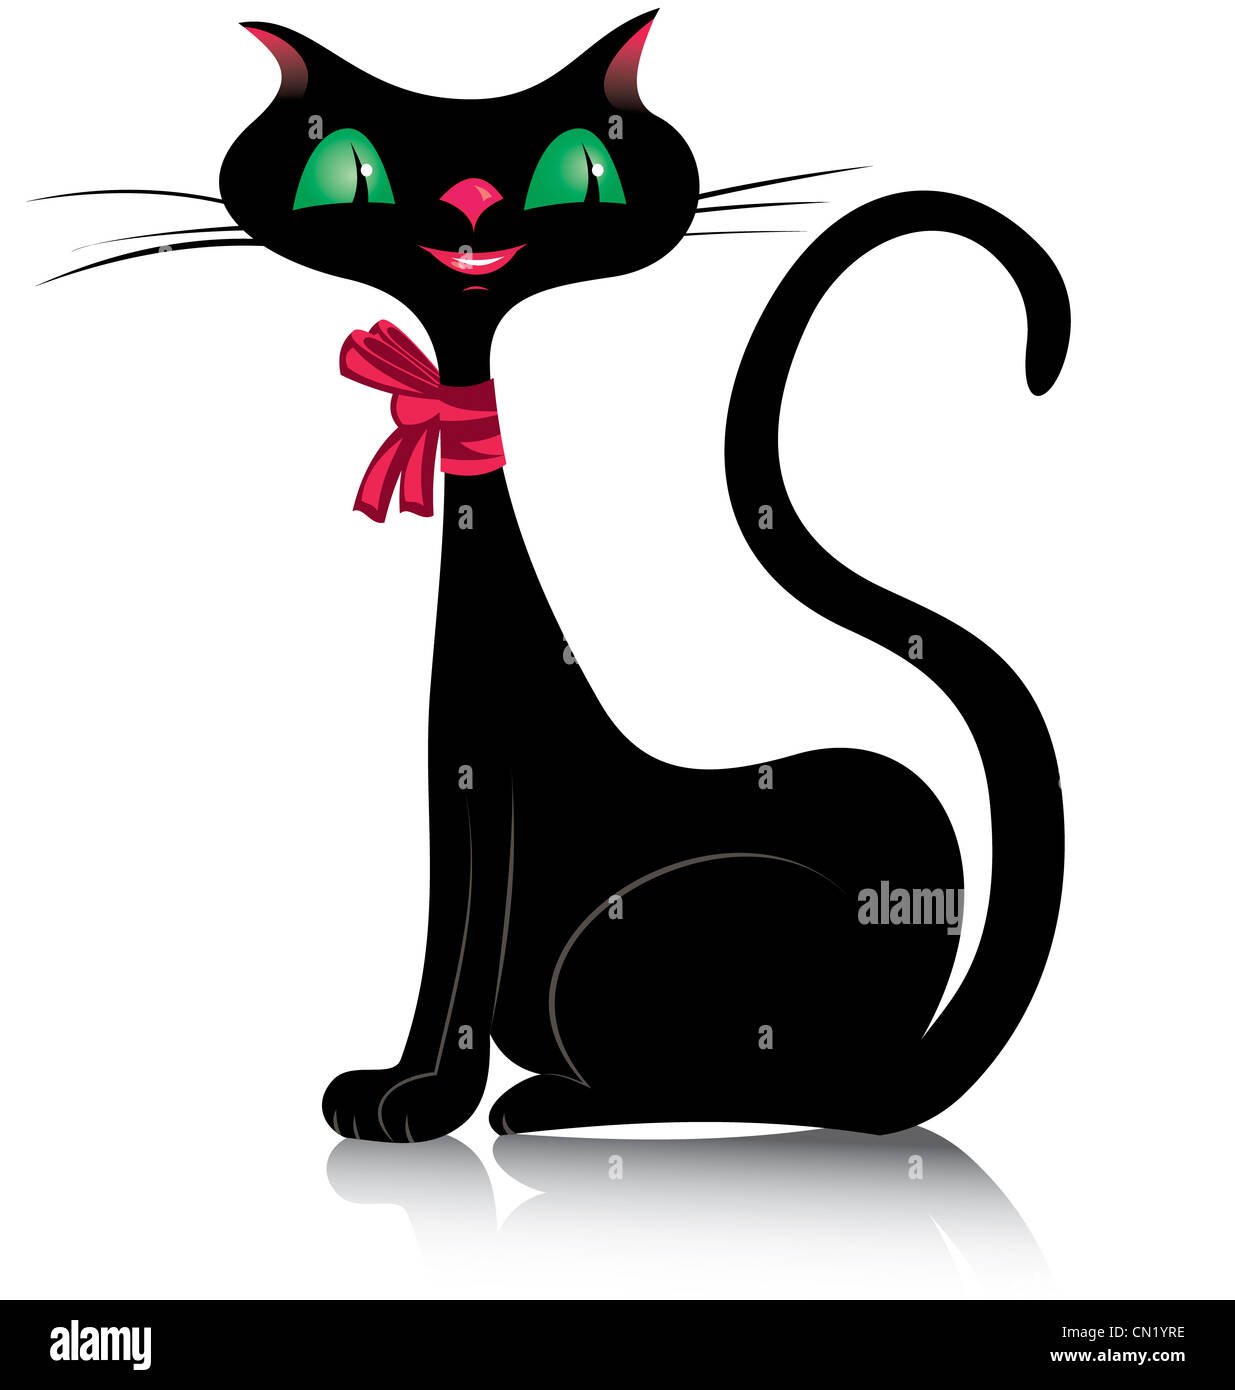 Vector illustration d'un chat noir avec des yeux verts et des lèvres roses Banque D'Images